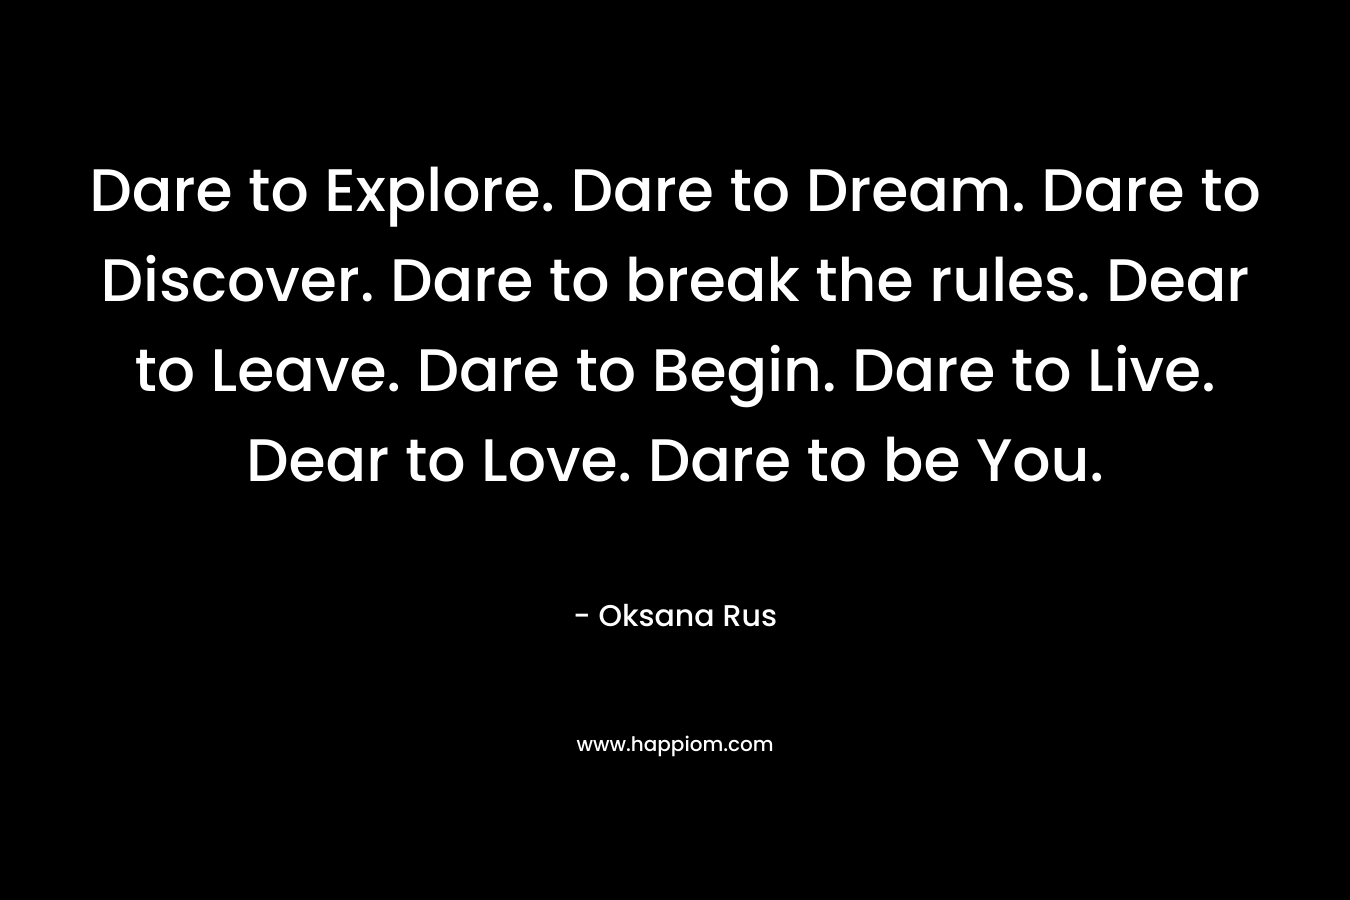 Dare to Explore. Dare to Dream. Dare to Discover. Dare to break the rules. Dear to Leave. Dare to Begin. Dare to Live. Dear to Love. Dare to be You.